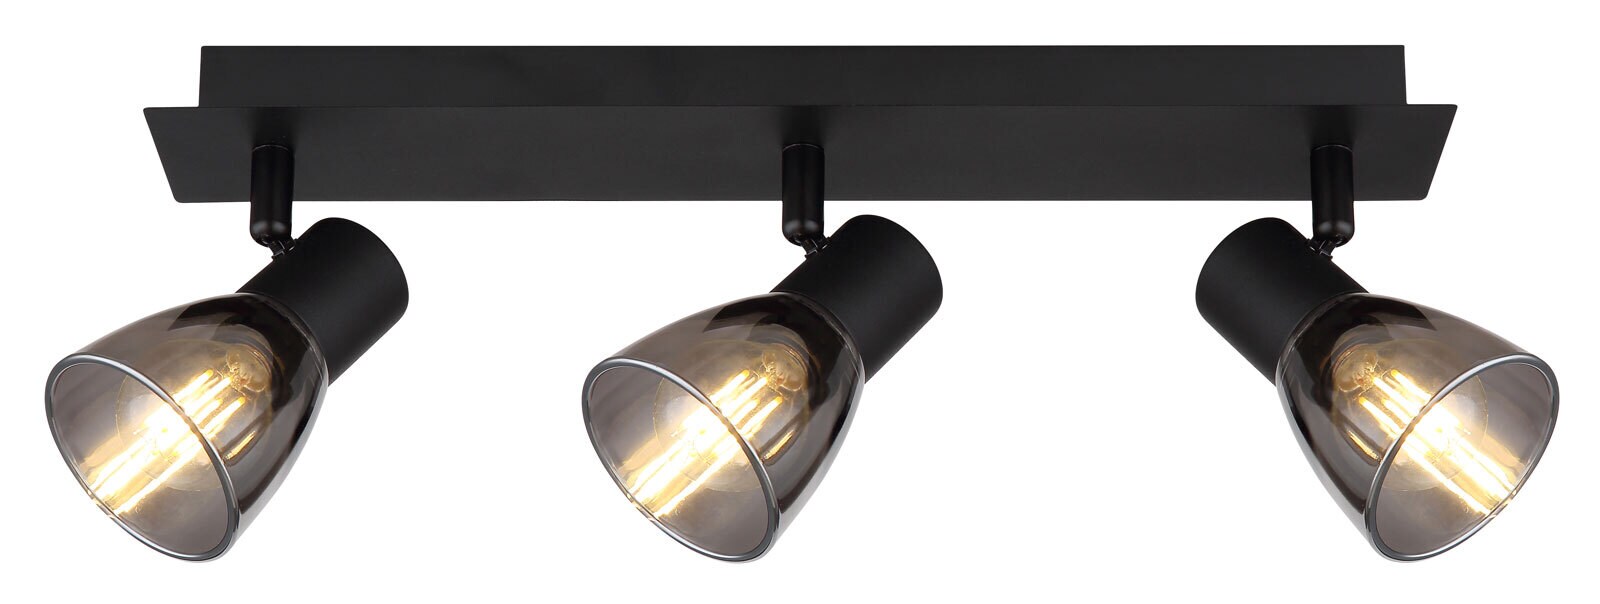 GLOBO Retrofit Deckenlampe mit 3 Spots CLAUDE 40 cm schwarz /rauchfarbig